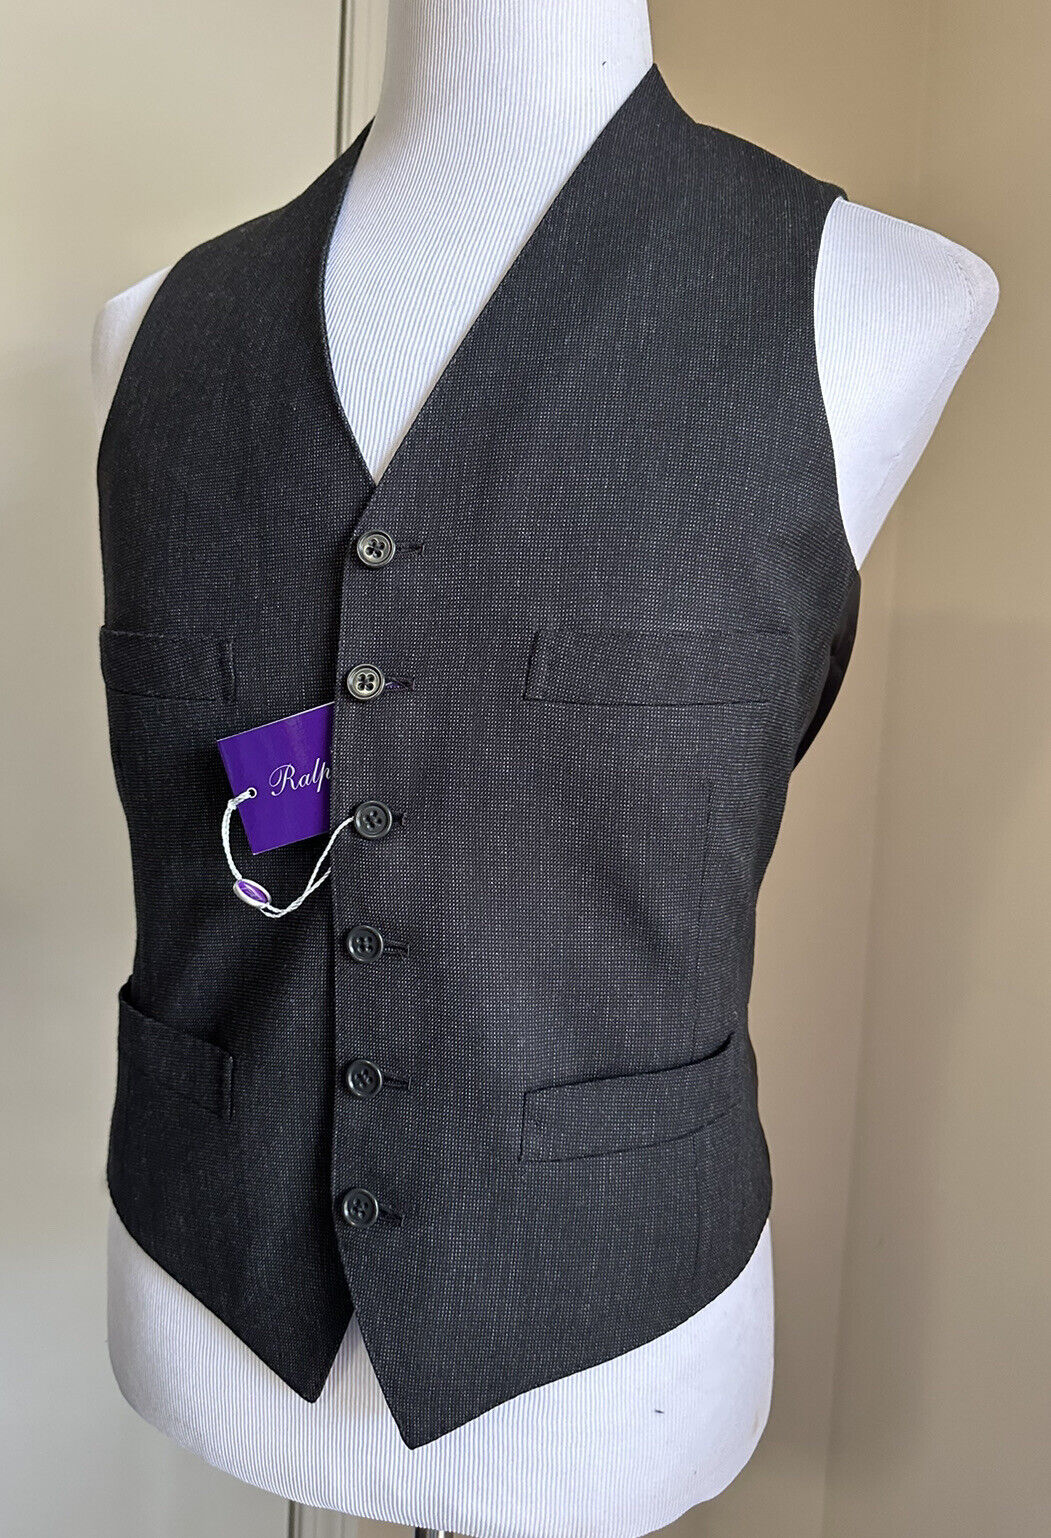 Новый мужской жилет Ralph Lauren Purple Label стоимостью 995 долларов США, серый цвет DK, 38R, США/48R, ЕС, Италия